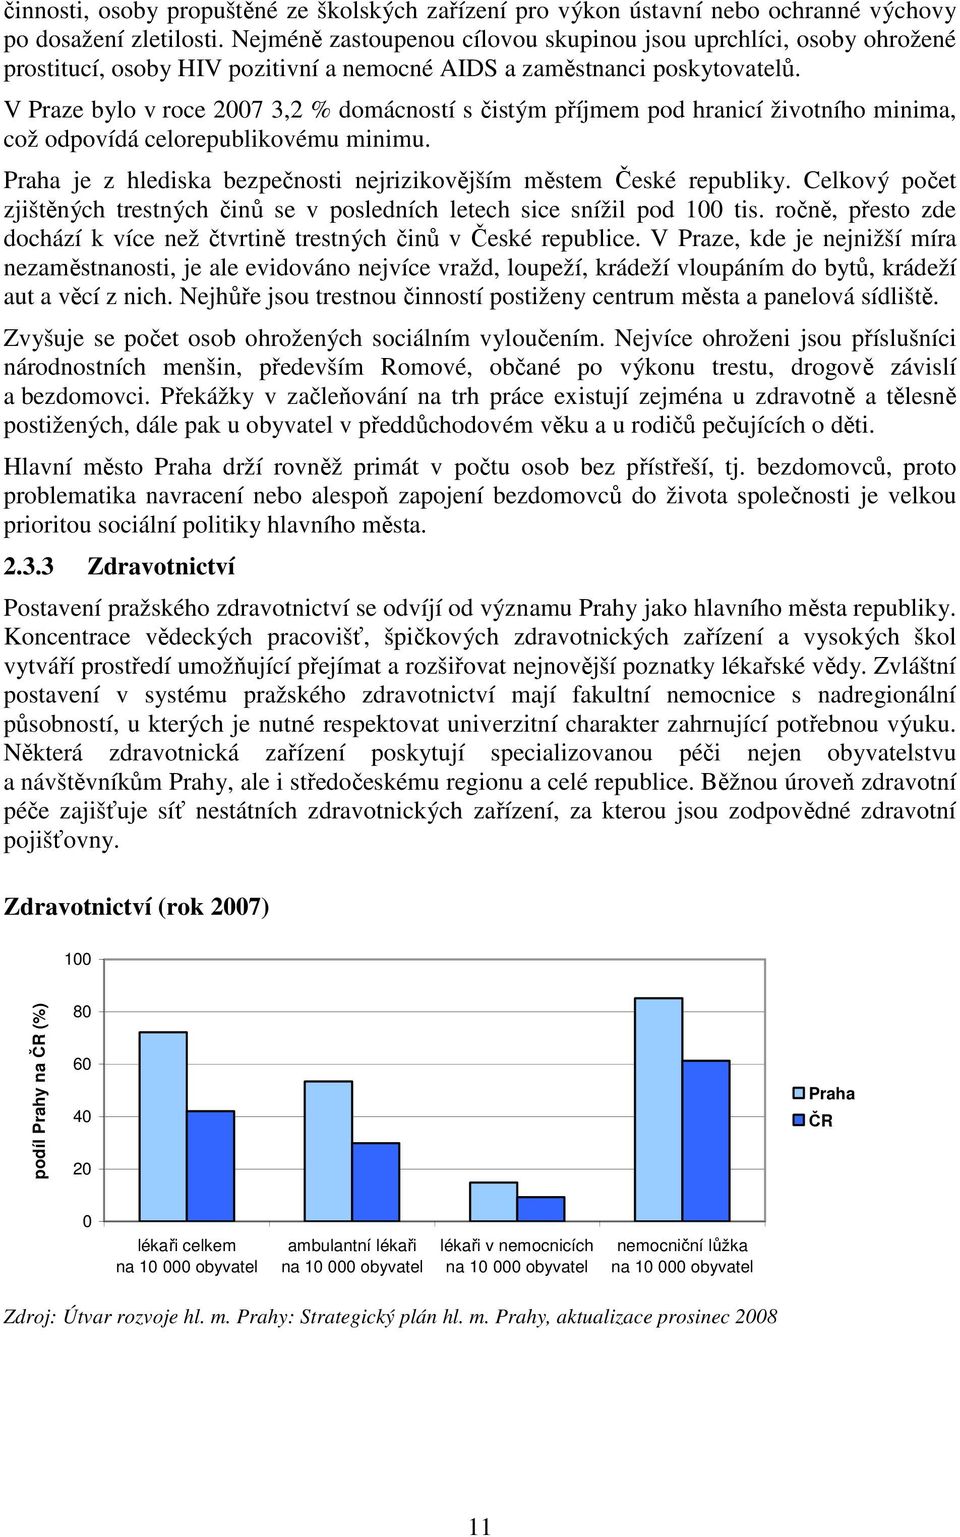 V Praze bylo v roce 2007 3,2 % domácností s čistým příjmem pod hranicí životního minima, což odpovídá celorepublikovému minimu. Praha je z hlediska bezpečnosti nejrizikovějším městem České republiky.